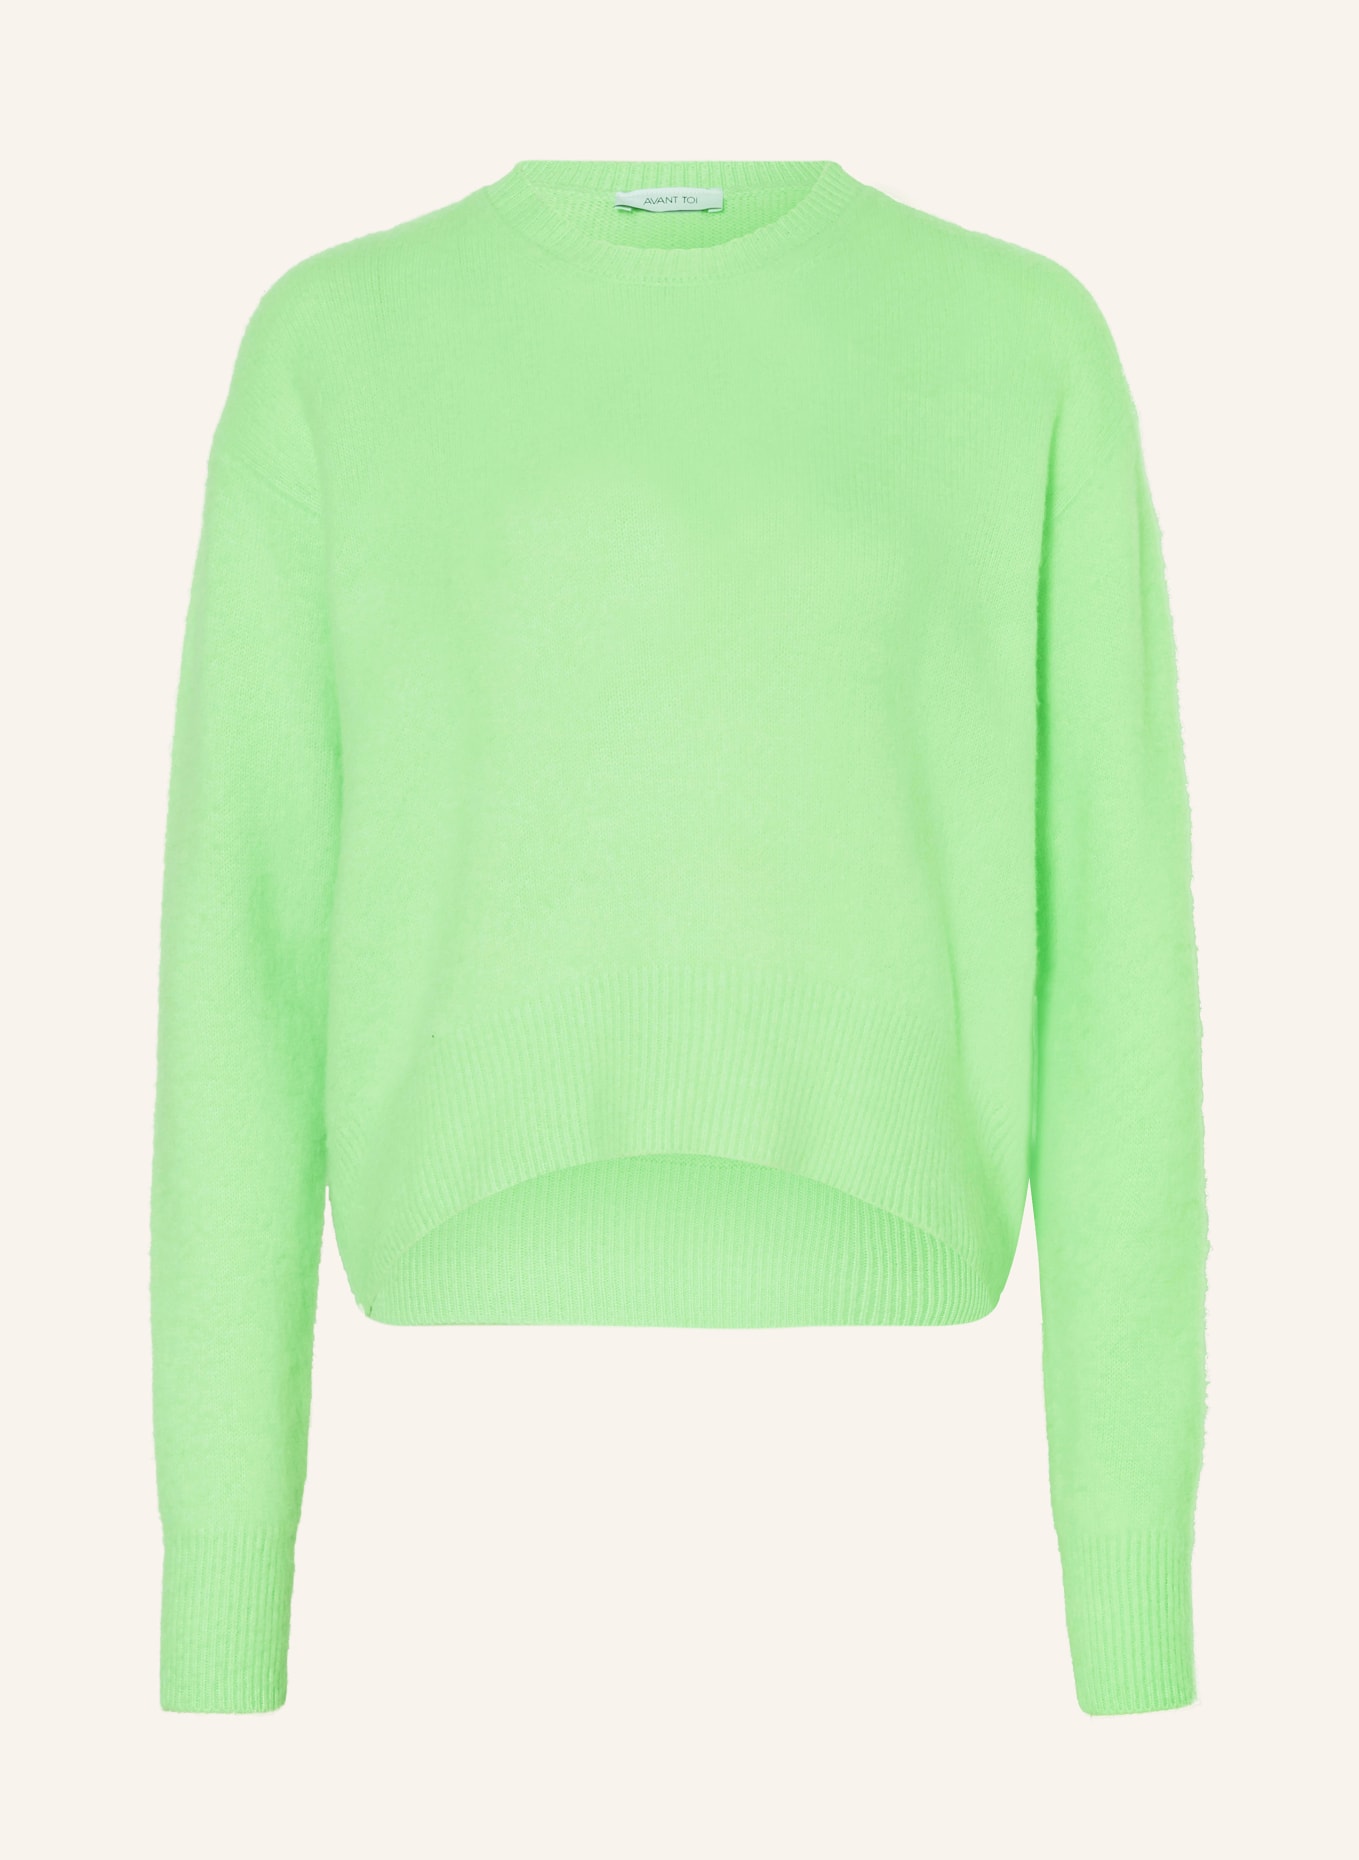 AVANT TOI Cashmere sweater, Color: MINT (Image 1)